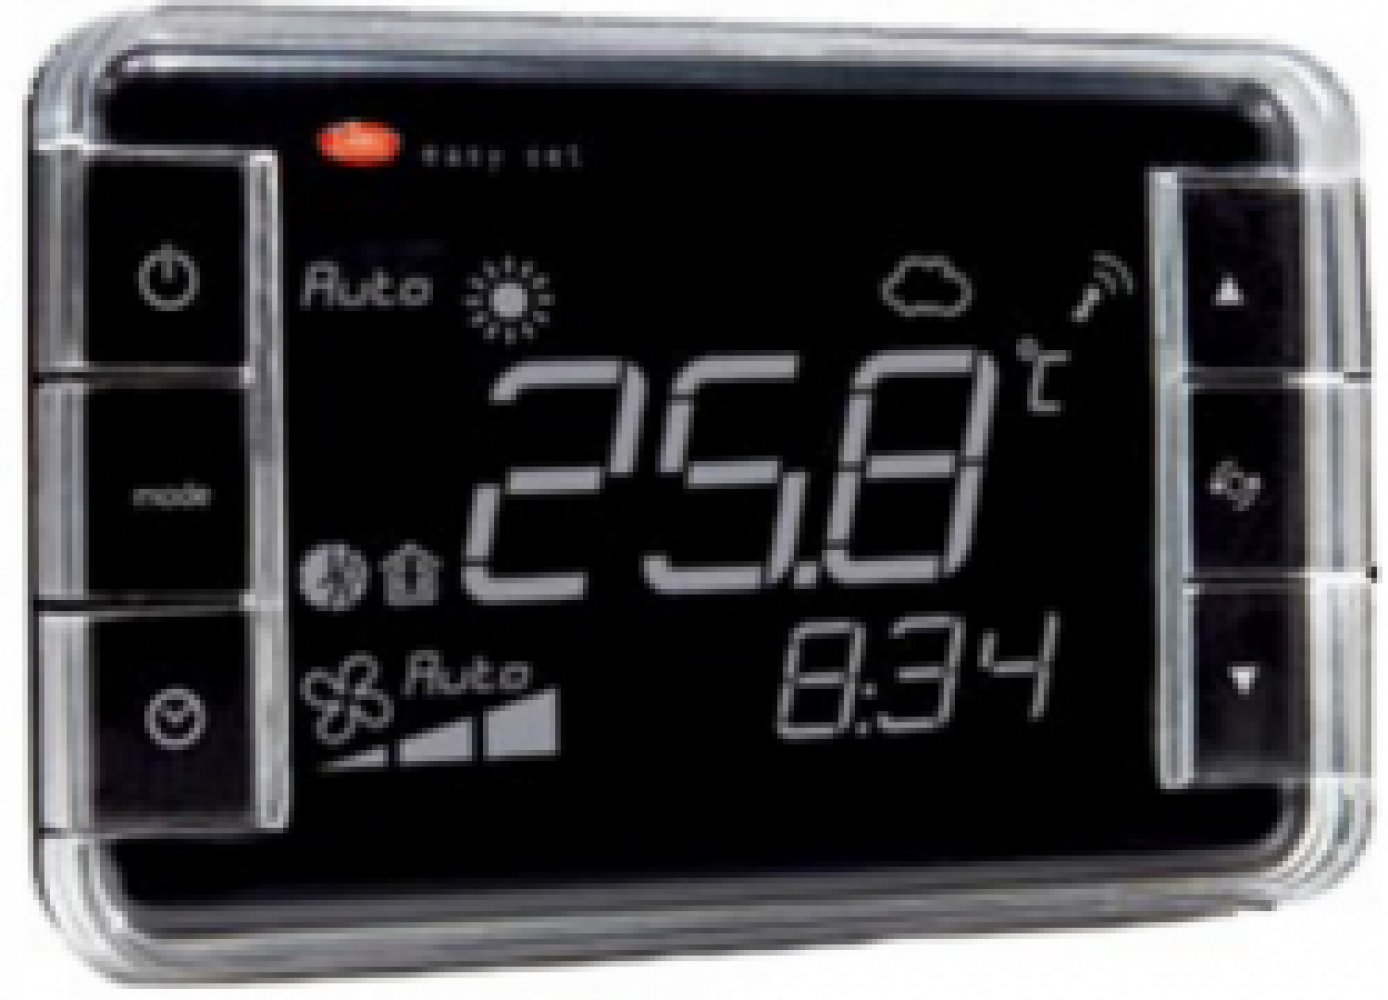 EW01TB1100 Термостат Easyset для e-dronic, контроль температуры + влажности, корпус белого цвета, &quot;прямое&quot; отображение